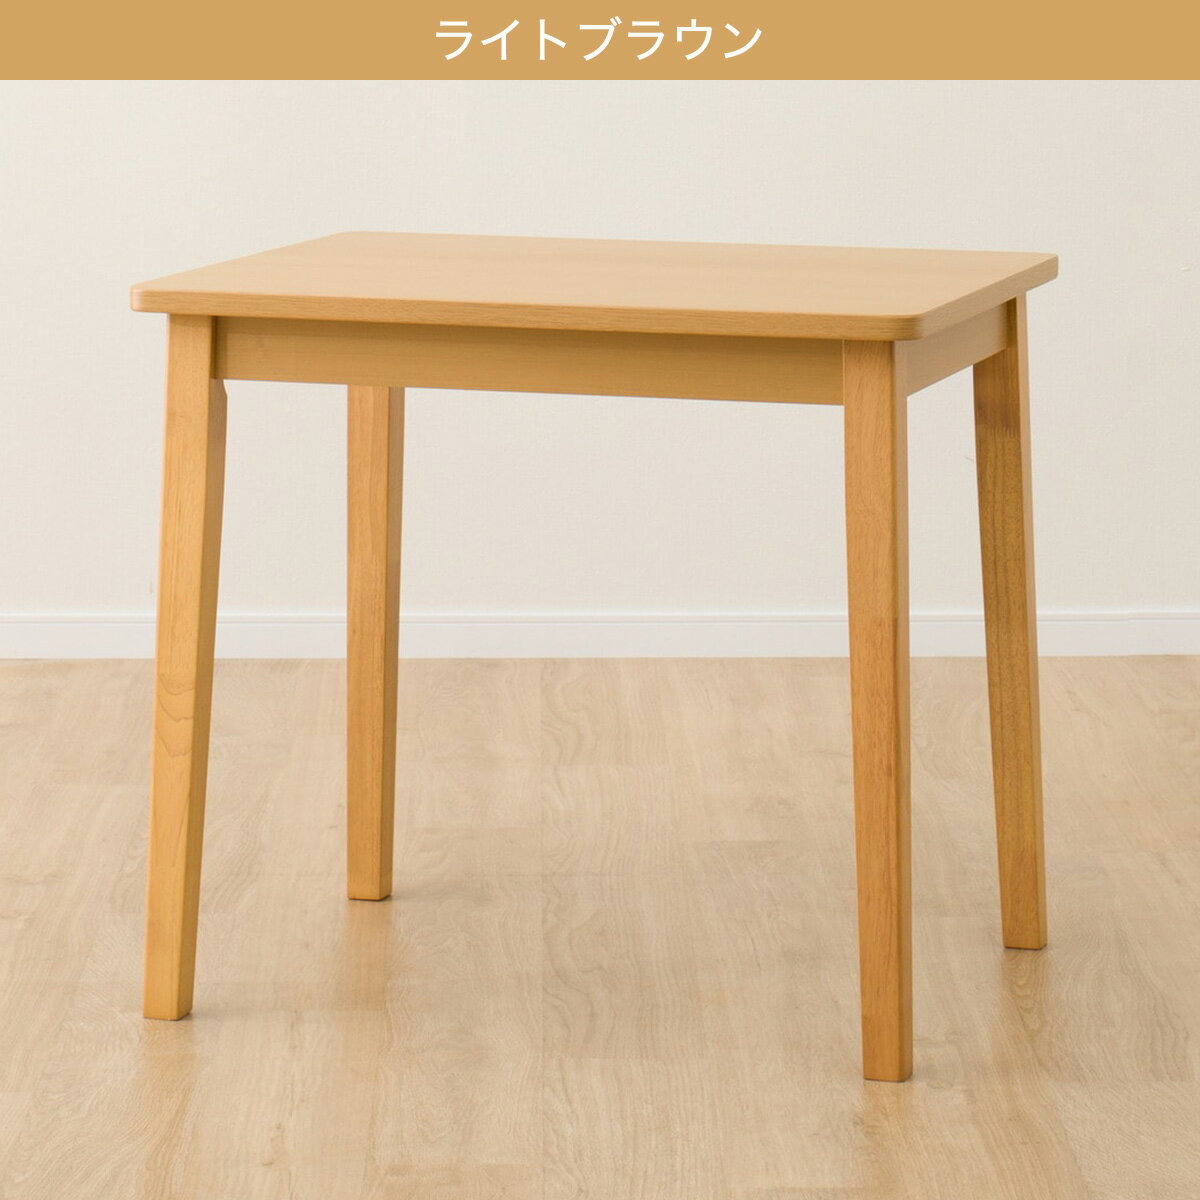 【北海道・東日本専用商品】[幅78cm] ダイニングテーブル(4LEG SI01 G 7860)   【5年保証】